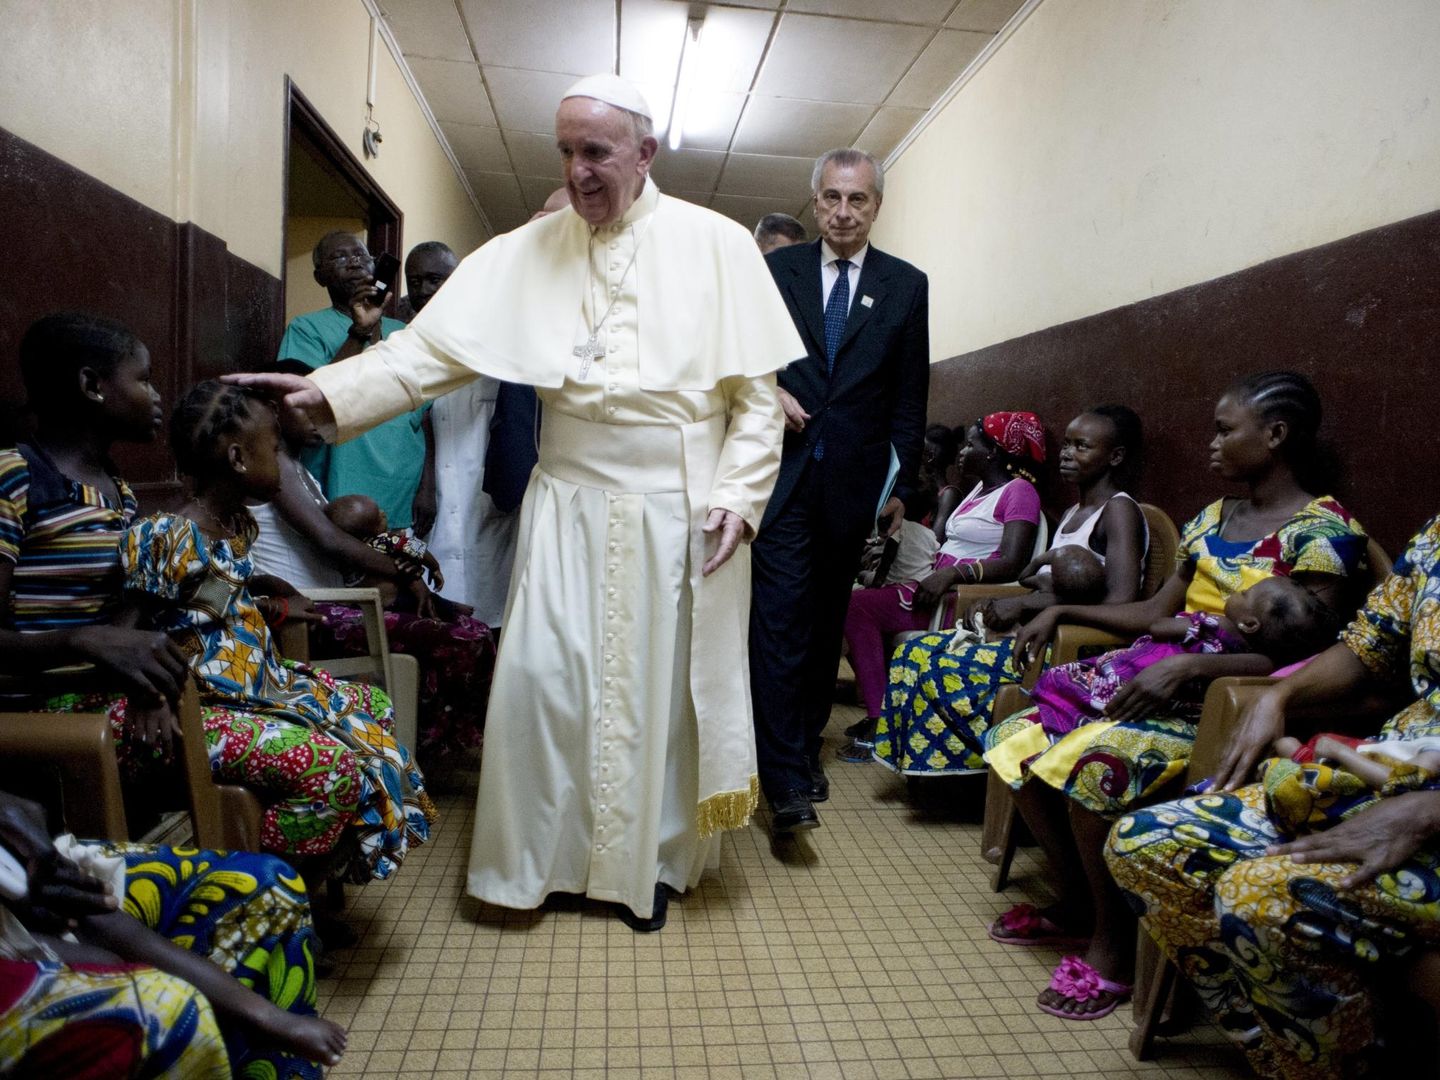 El Papa saluda a algunos pacientes durante un visita a un hospital en Bangui, República Centroafricana. (Reuters)